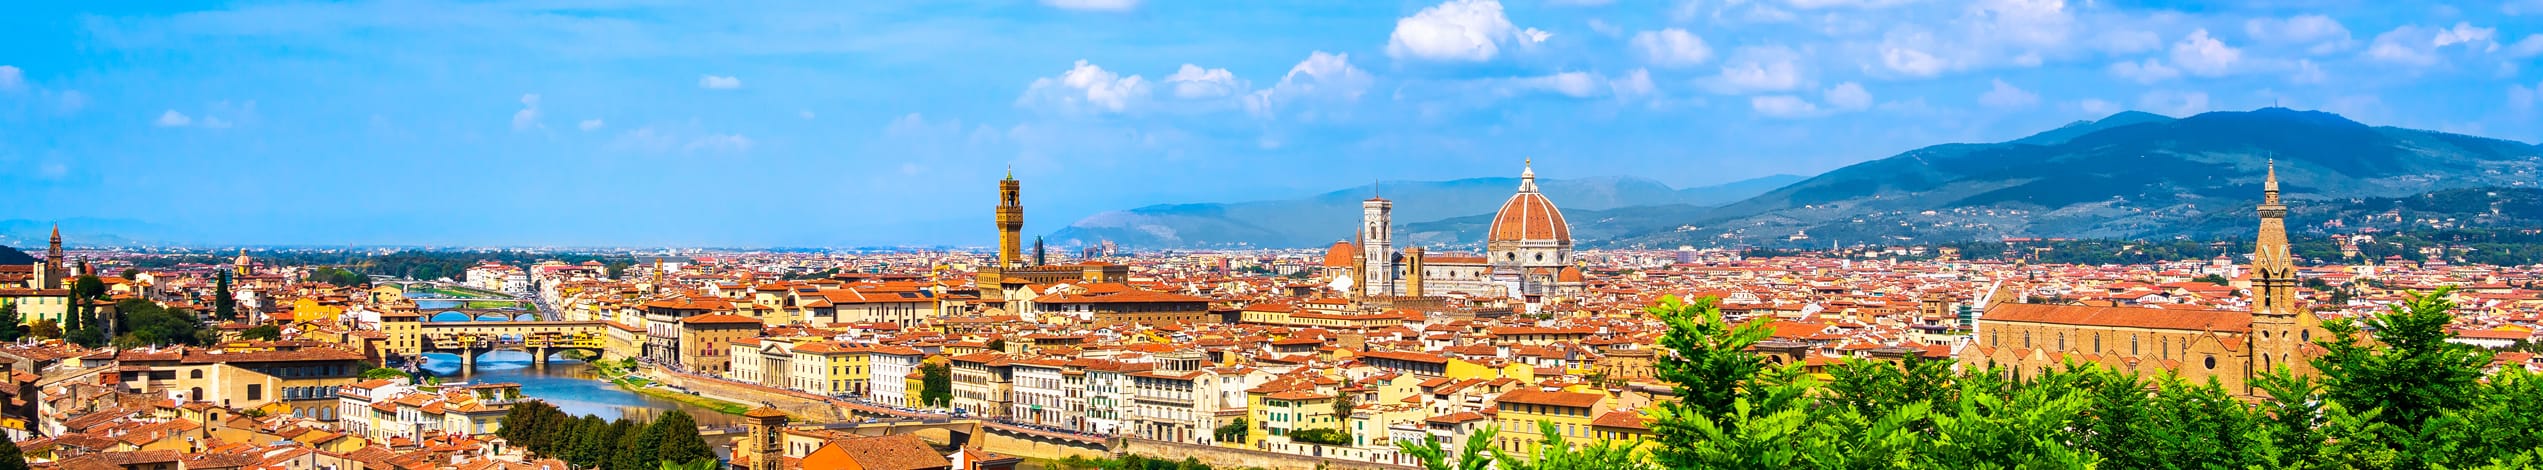 Studieresa till Italien - Florens